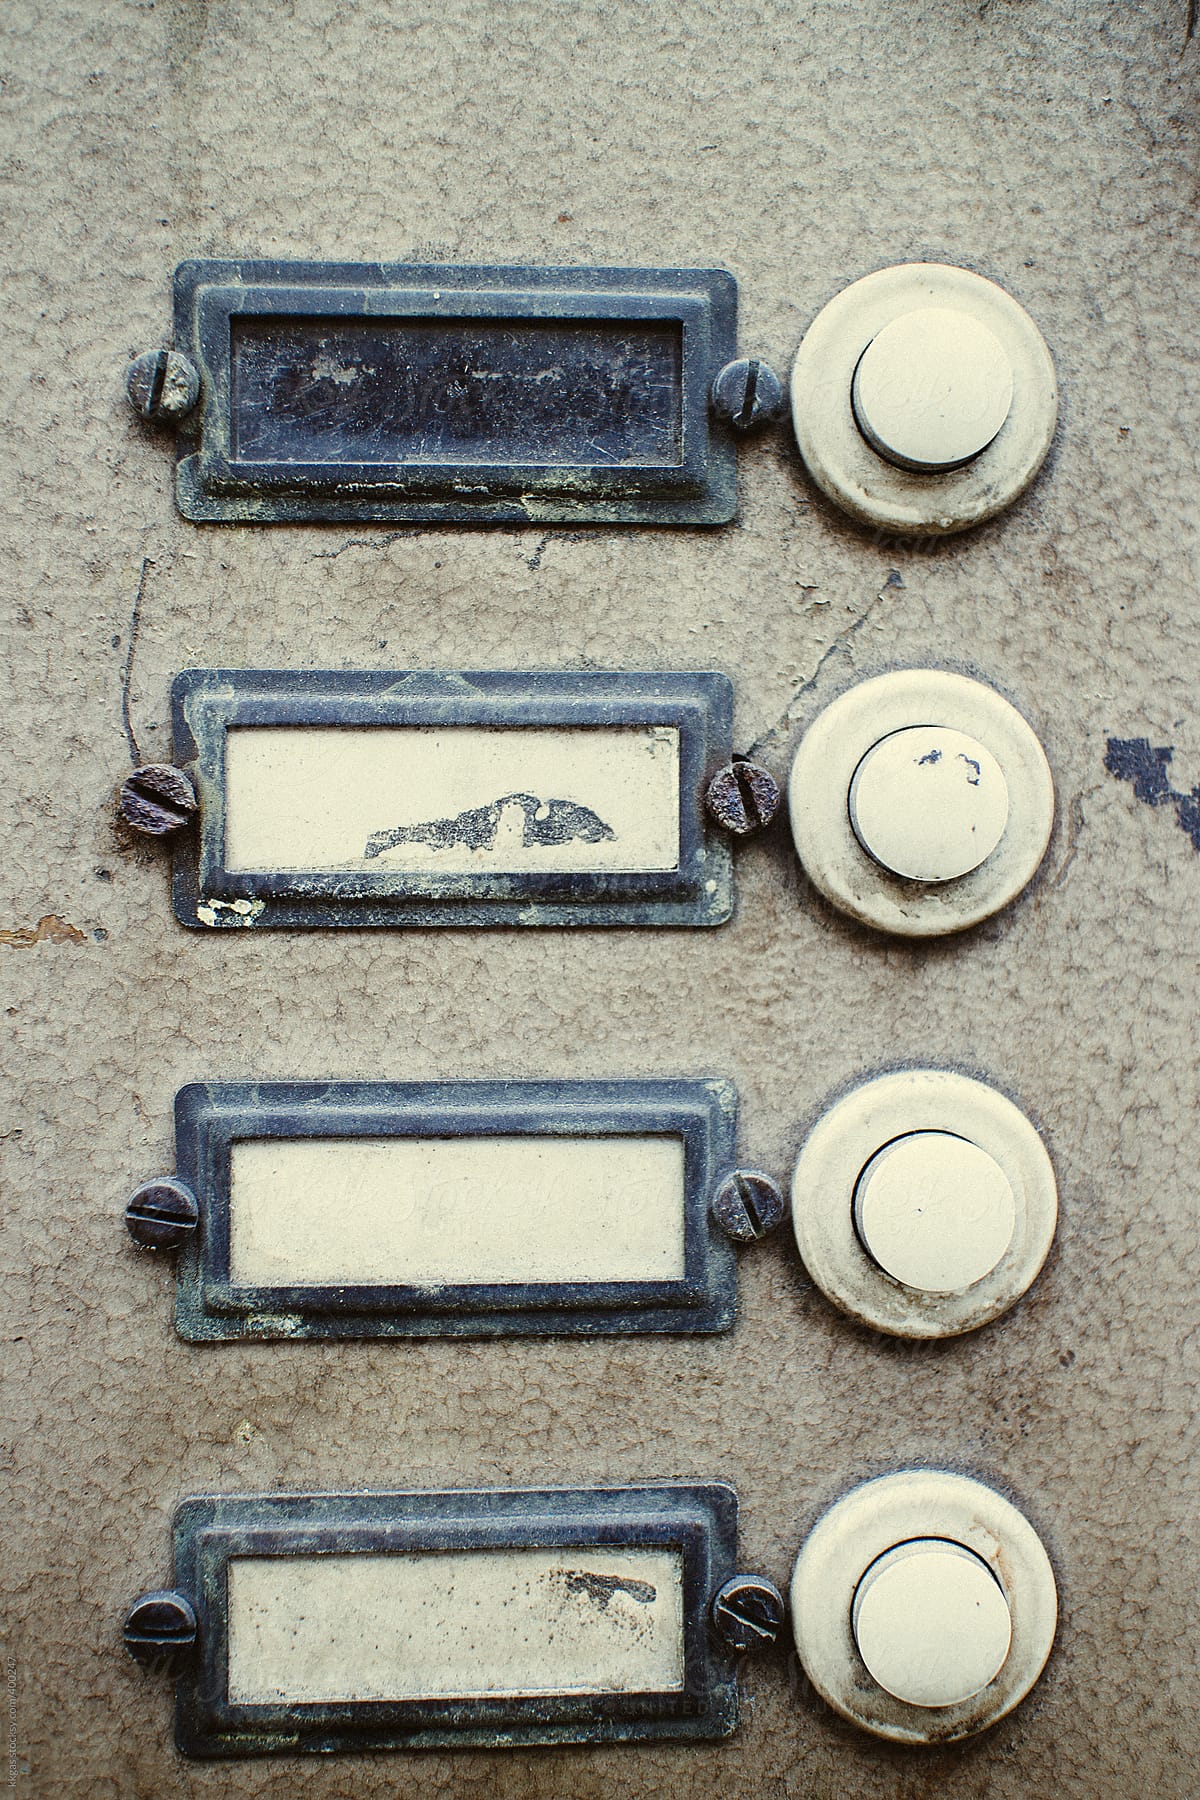 Vintage door bells with name labels